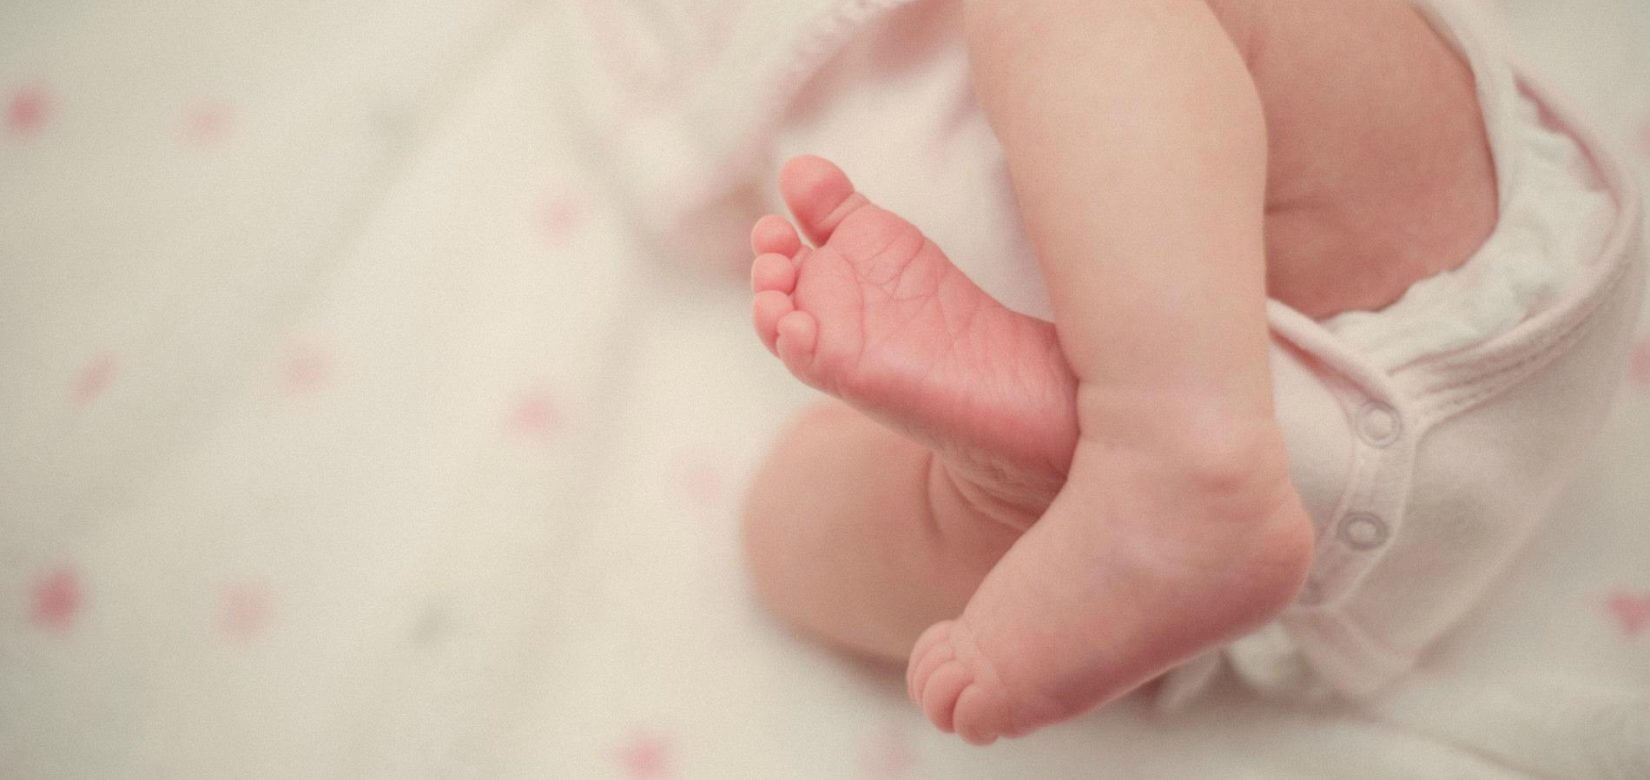 Πρώτη μεταμόσχευση λεπτού εντέρου σε μωρό στην Ισπανία - Αισιόδοξα νέα